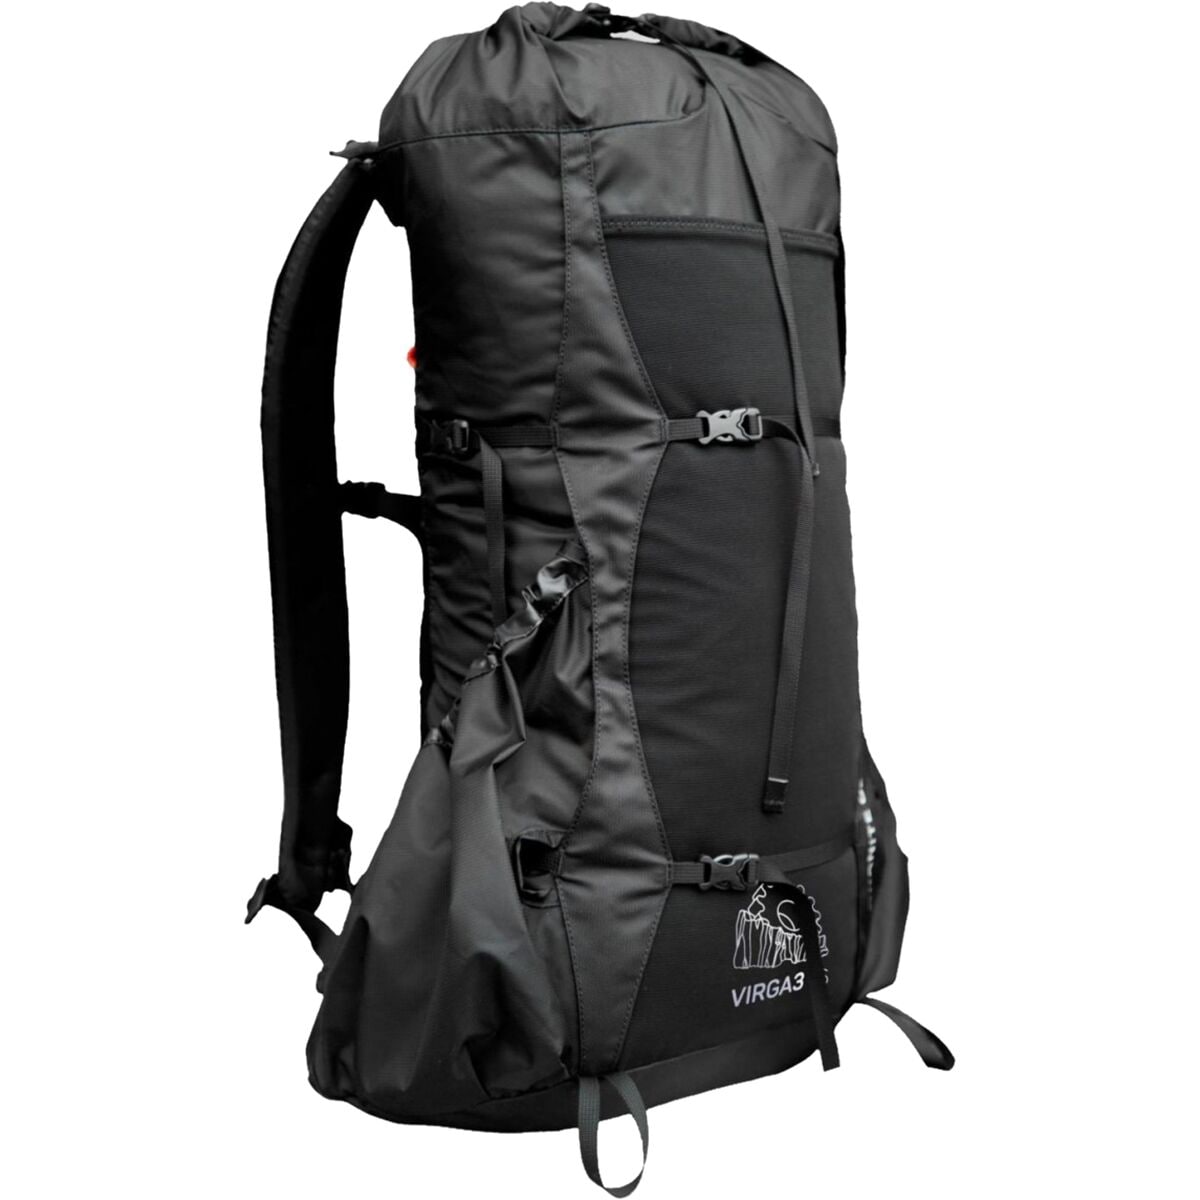 Granite Gear Virga 3 26L Backpack